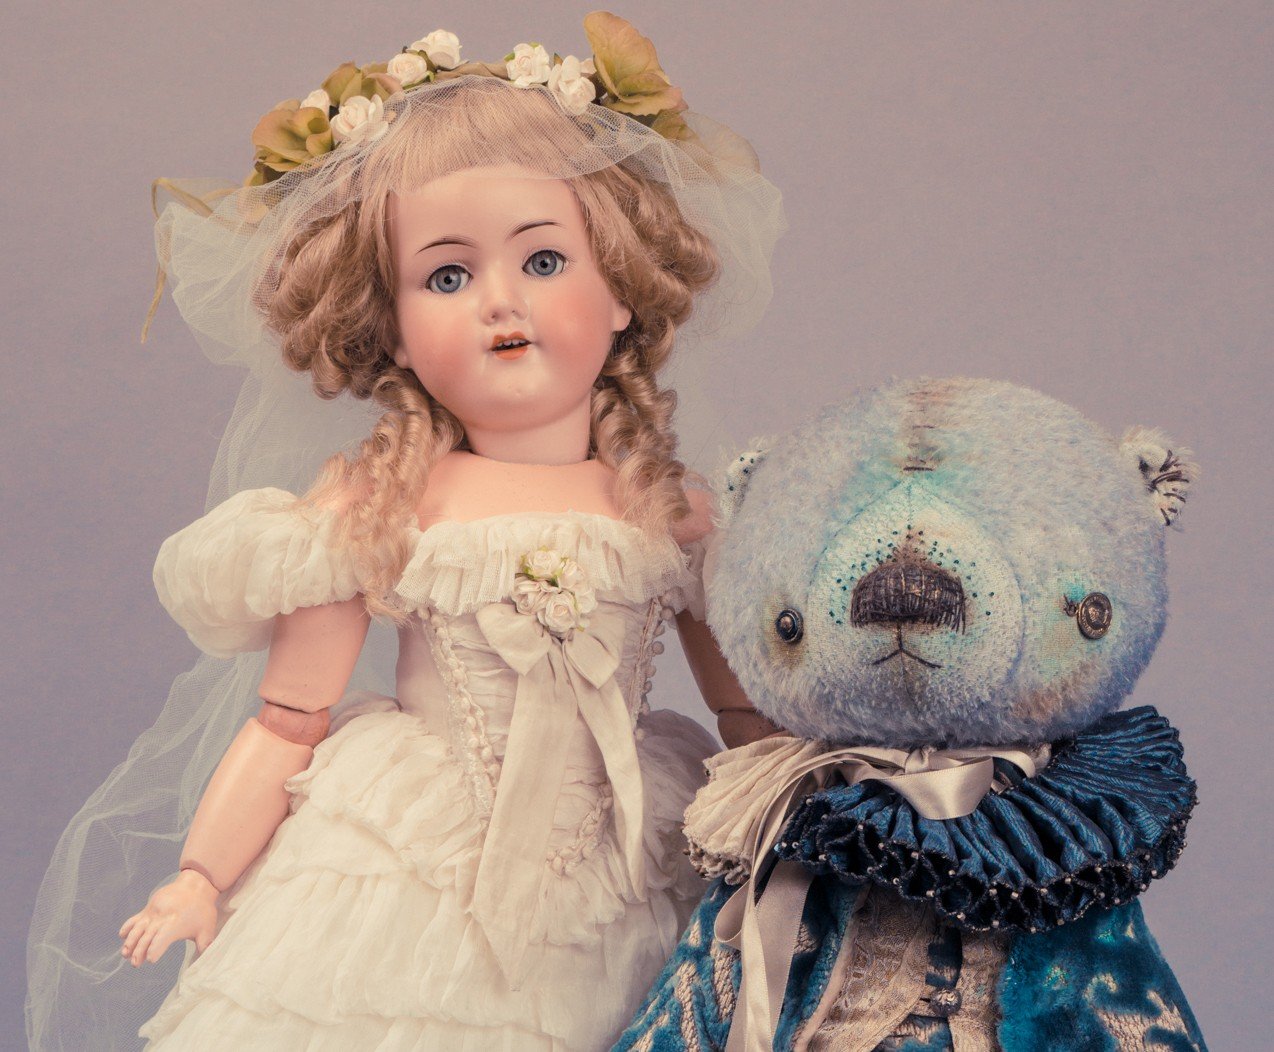 X Московская международная выставка  «Искусство куклы» состоится в Гостином дворе